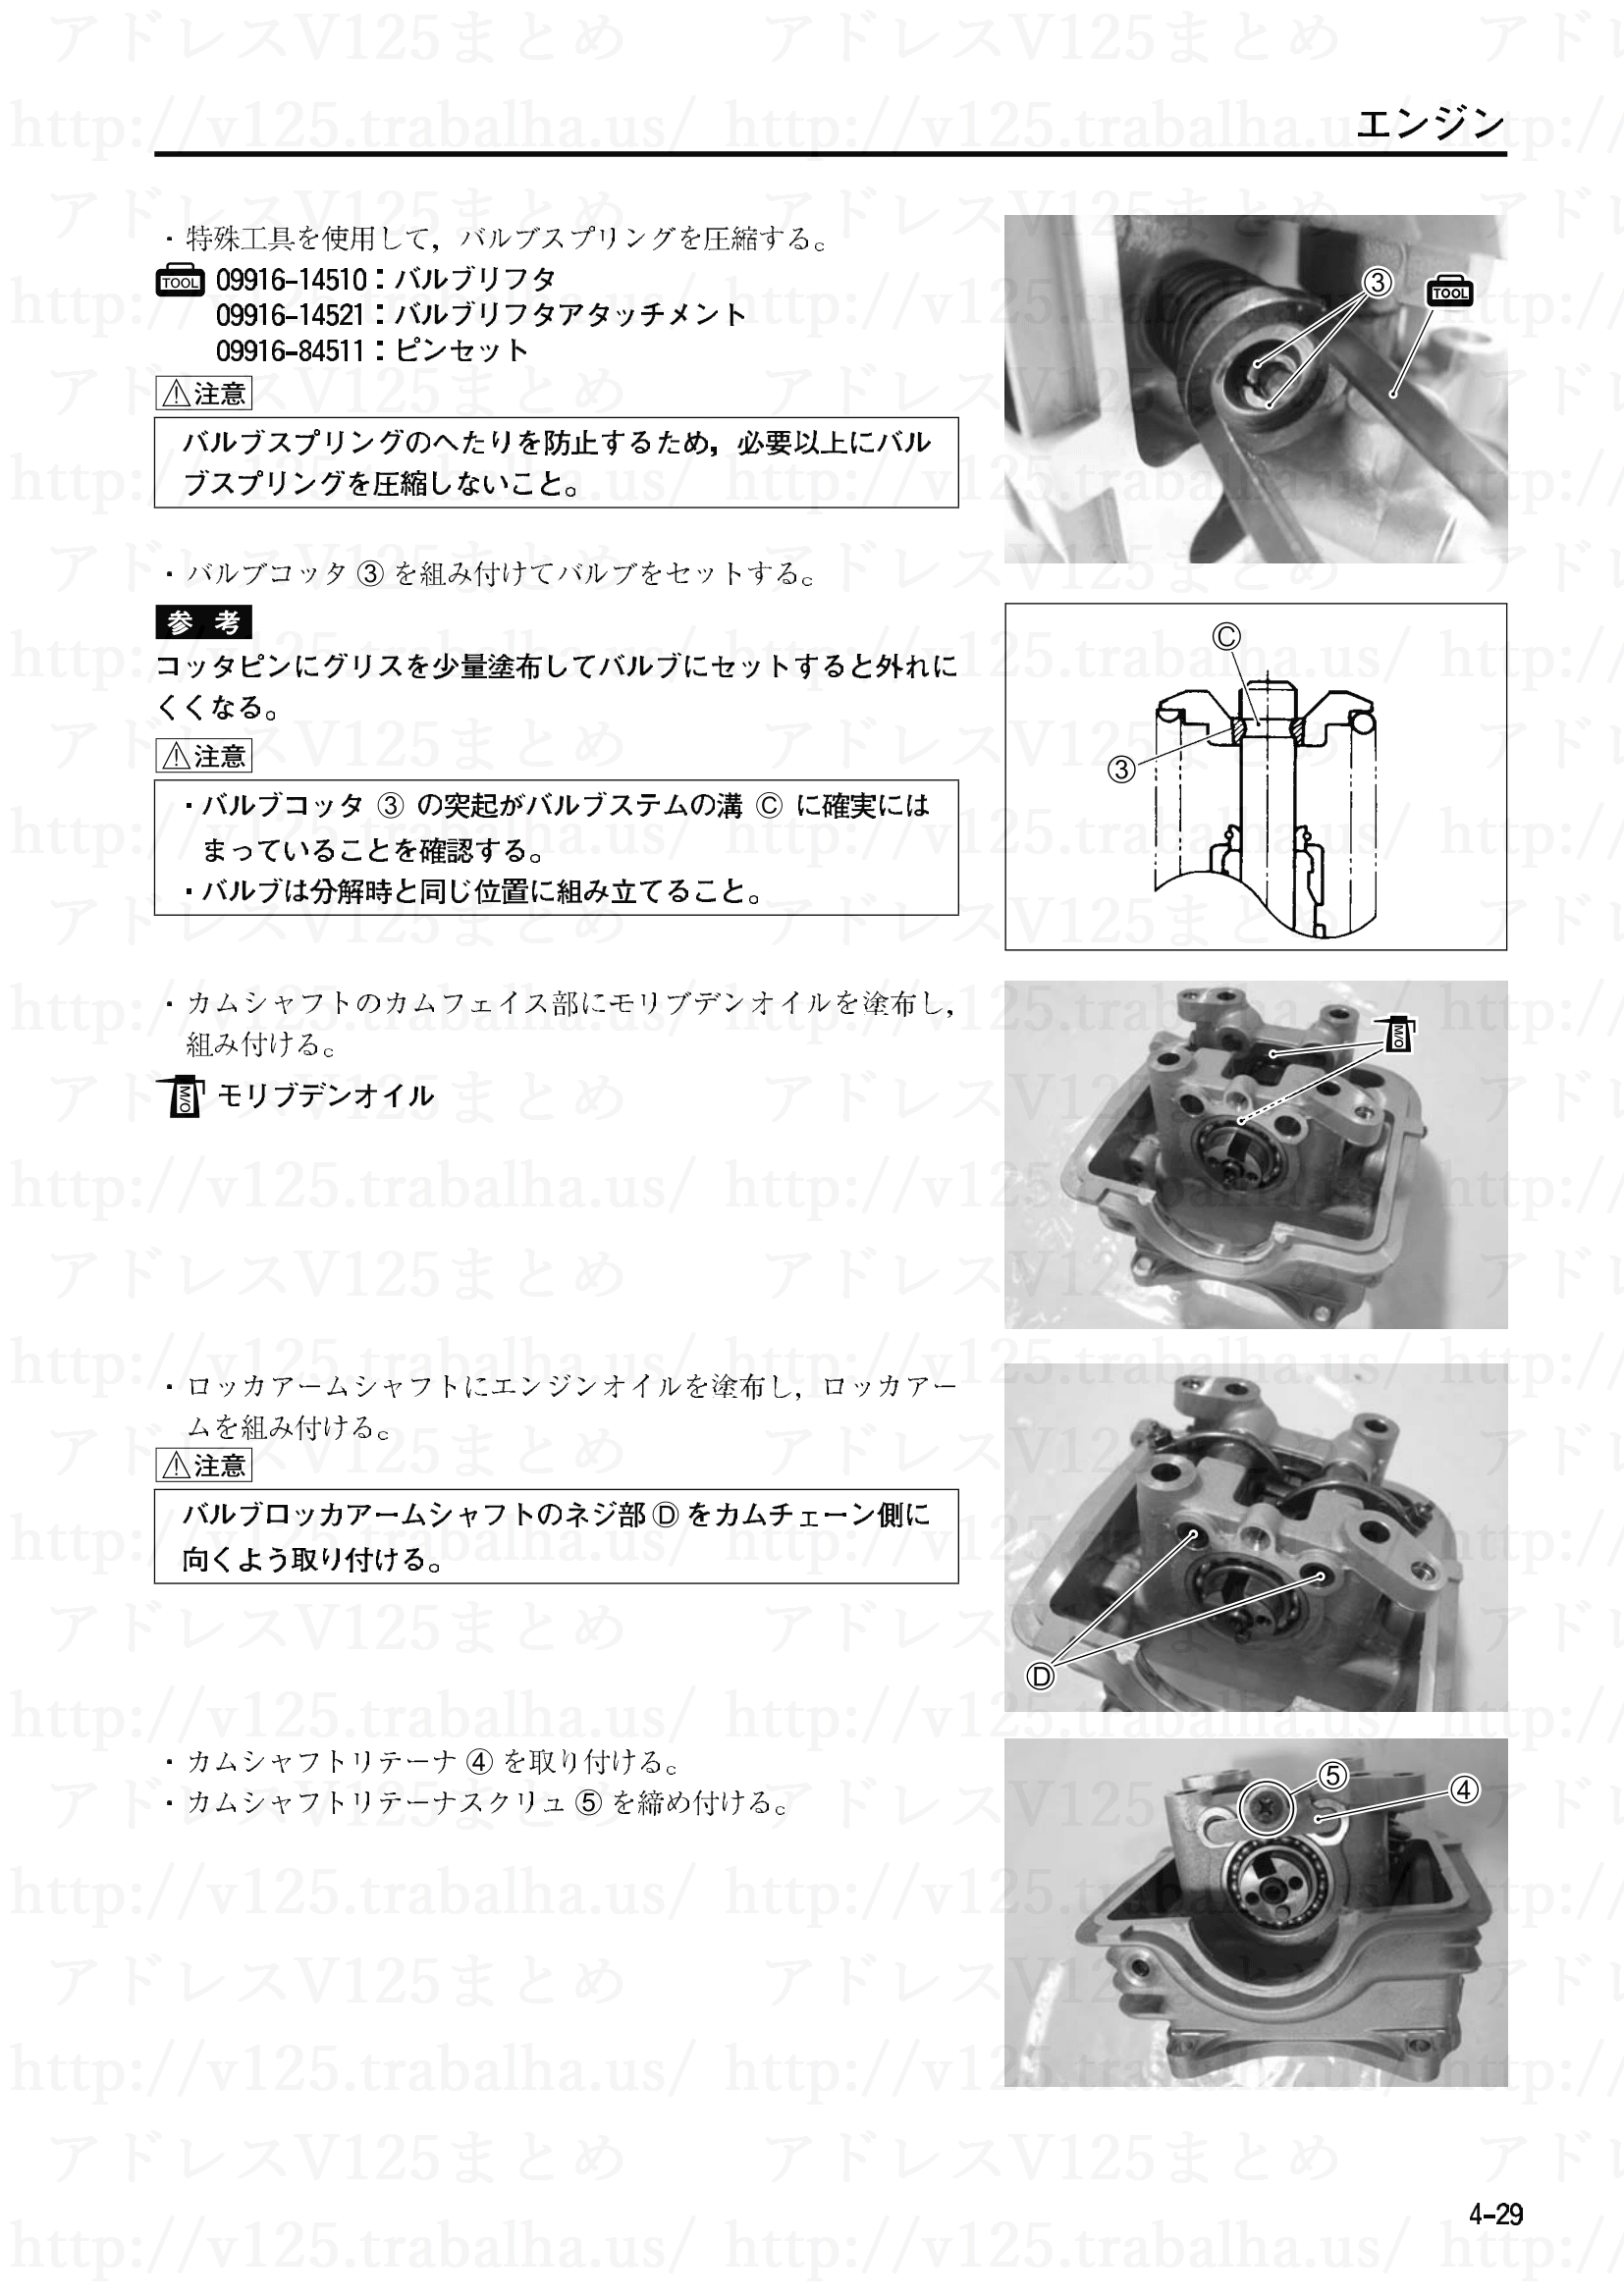 4-29【エンジン】エンジン部組部品の点検7